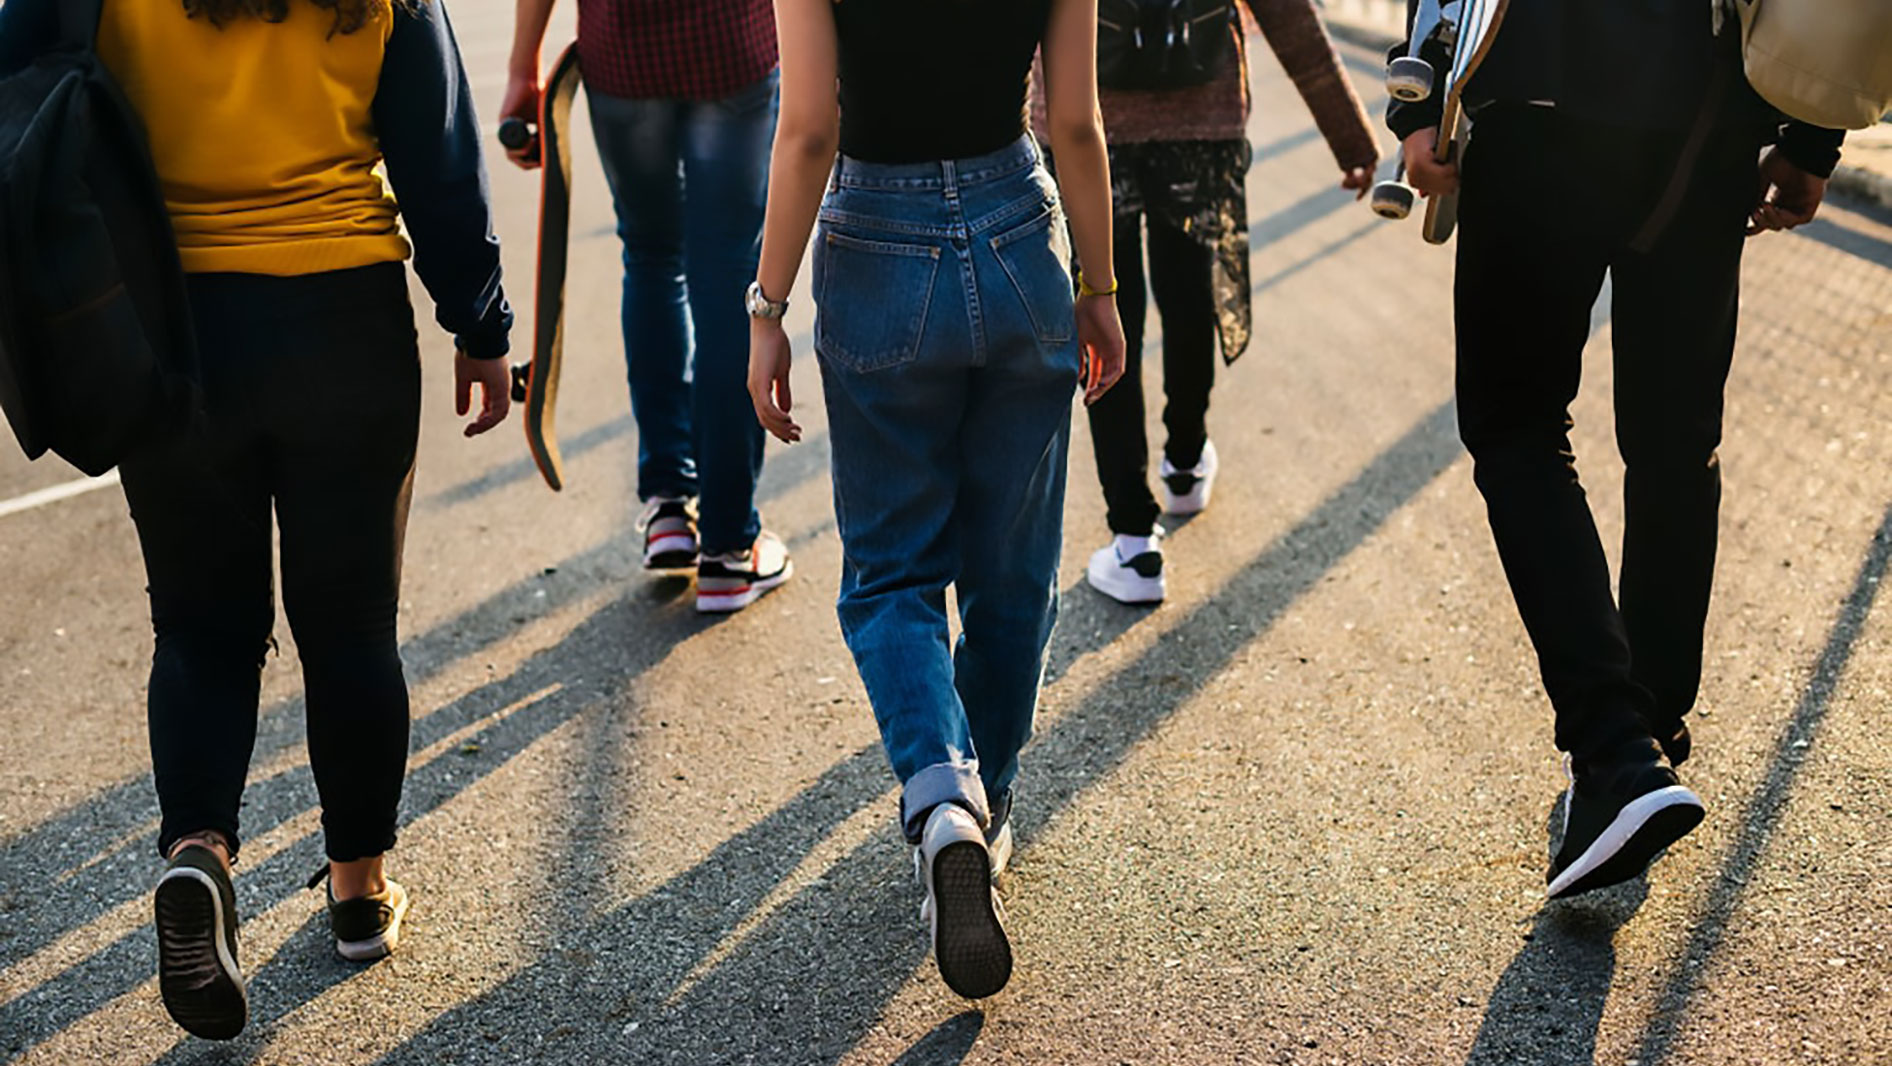 Teenagers walking down the street